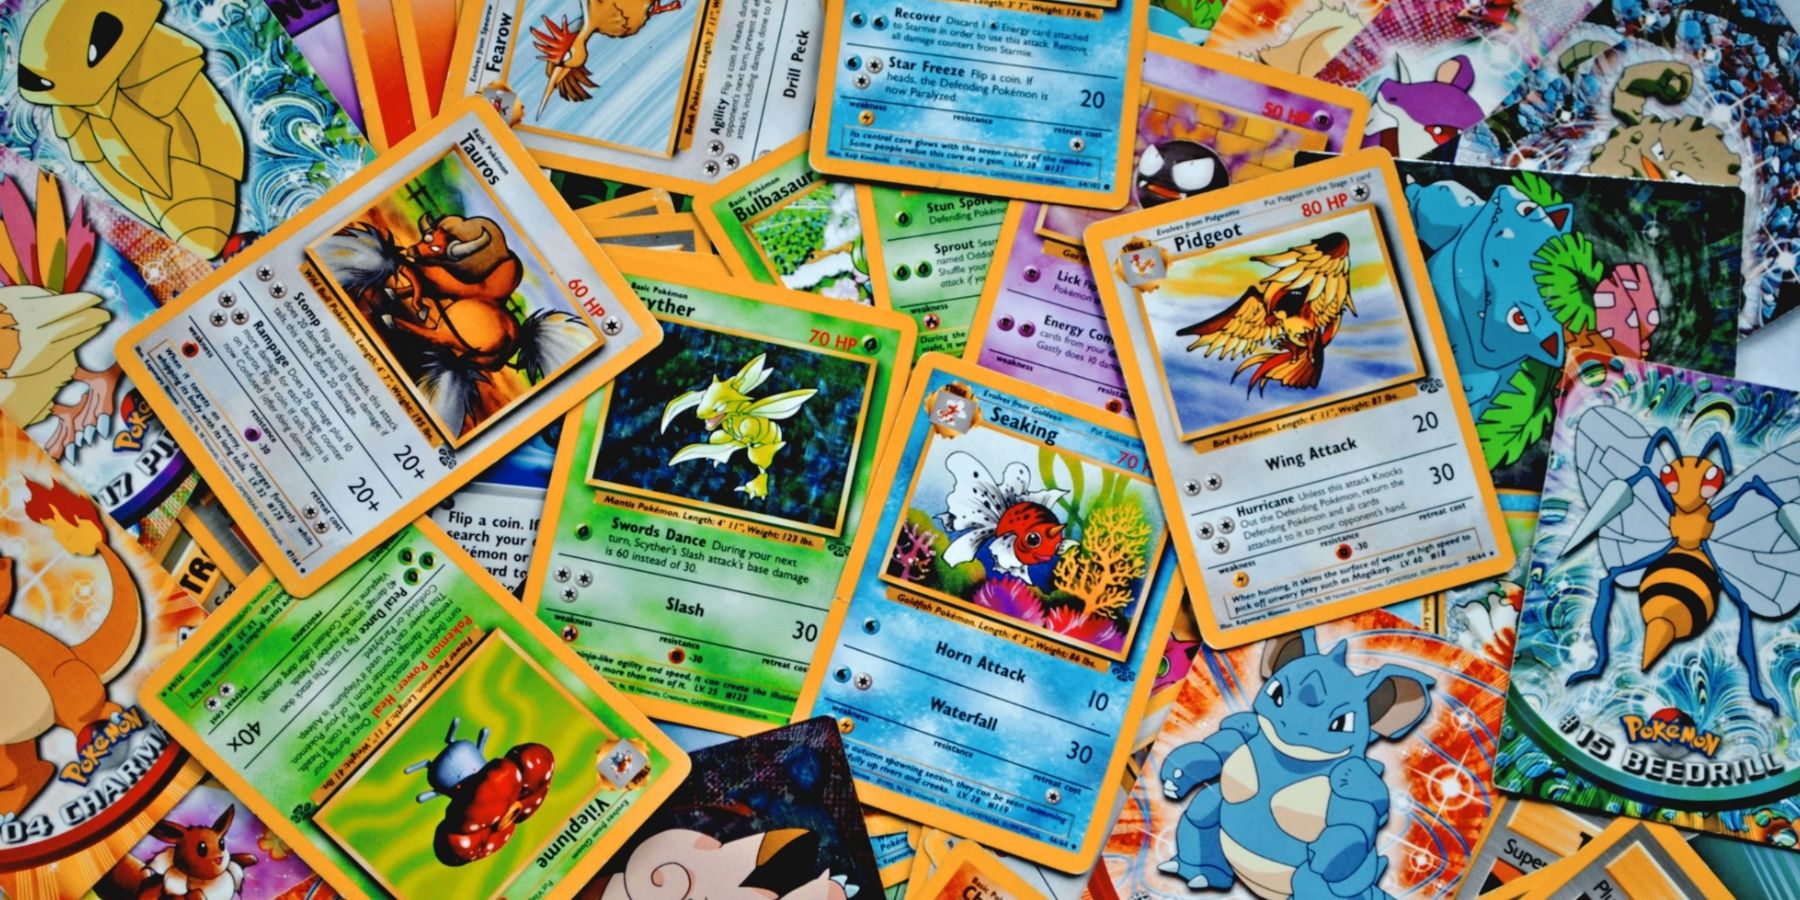 Pokémon Company Responds to Shortage By Adding 9 Billion New Cards